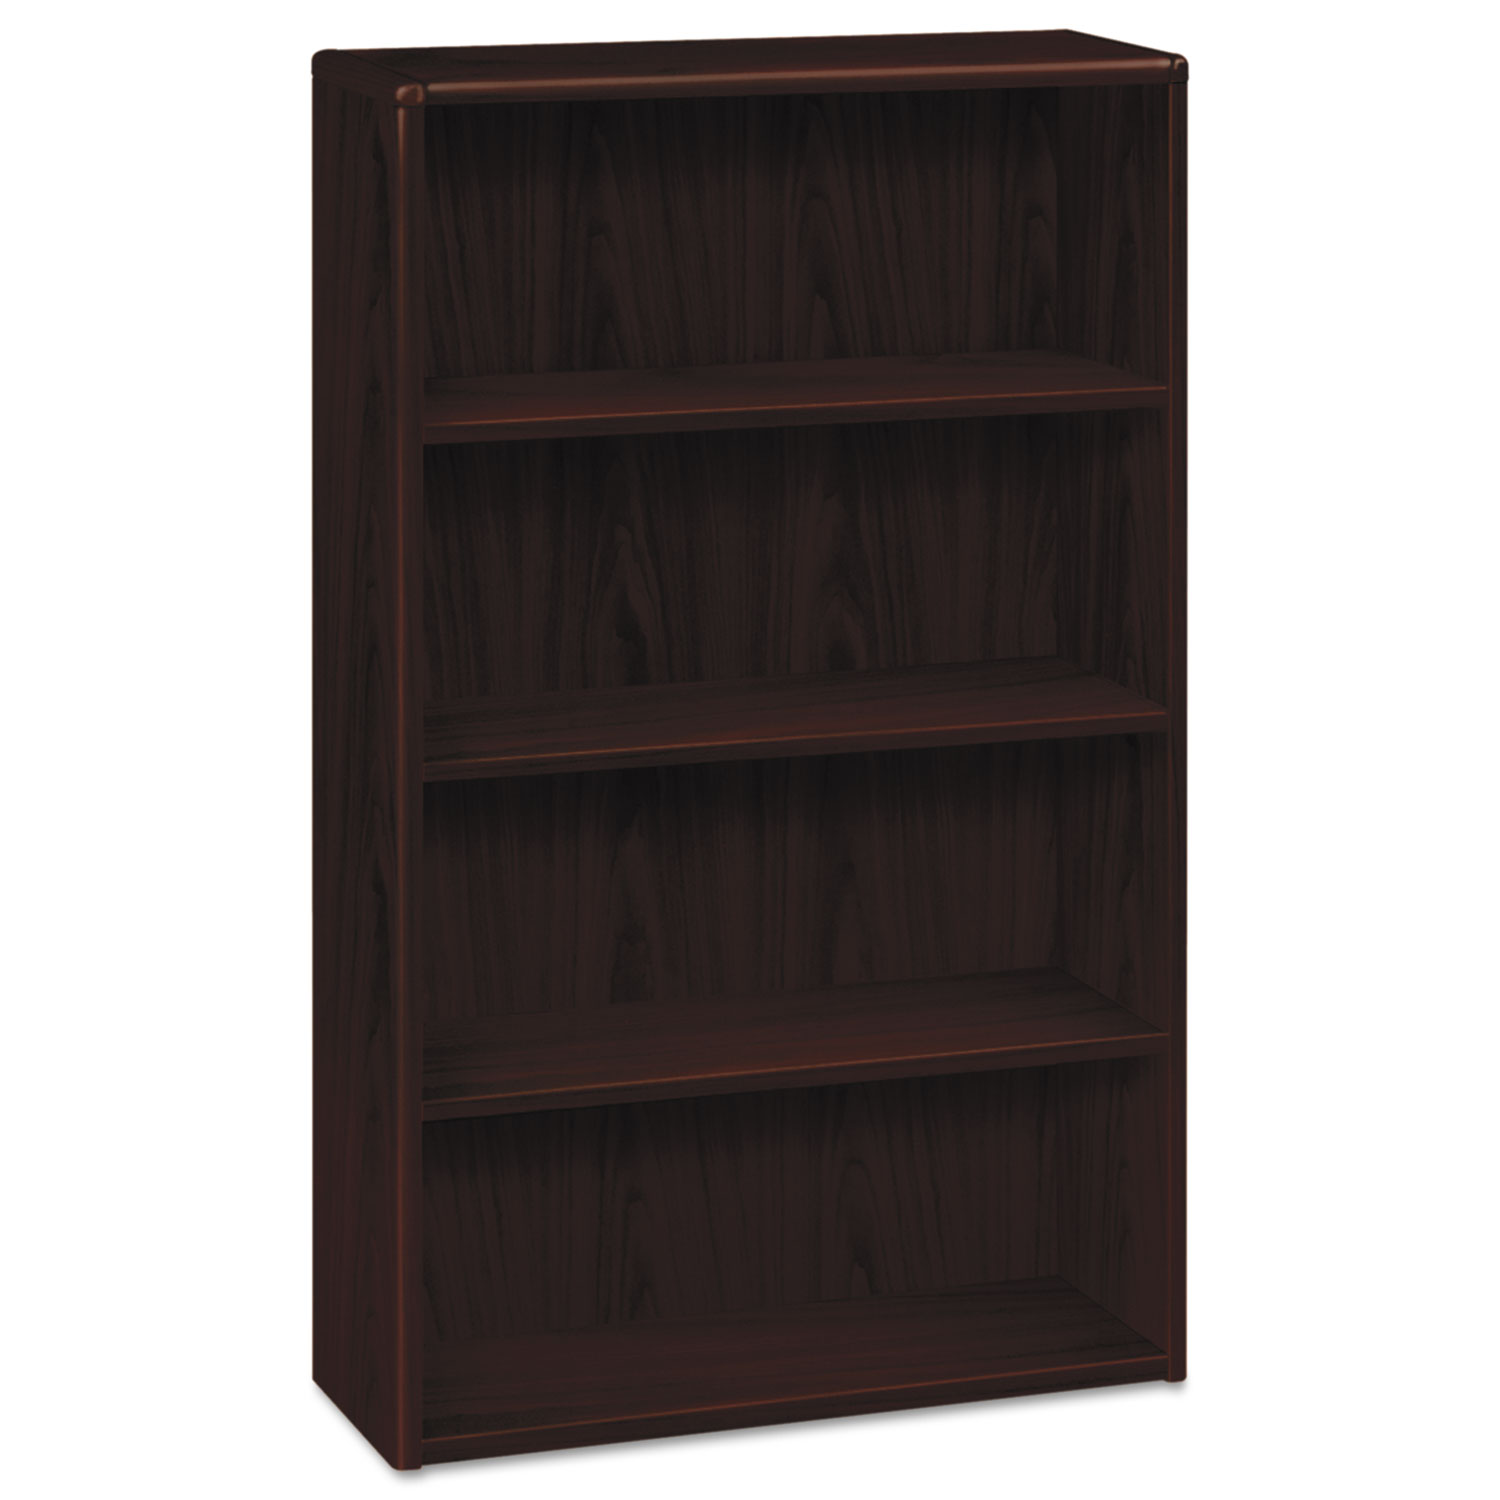  HON H10754.NN 10700 Series Wood Bookcase, Four Shelf, 36w x 13 1/8d x 57 1/8h, Mahogany (HON10754NN) 